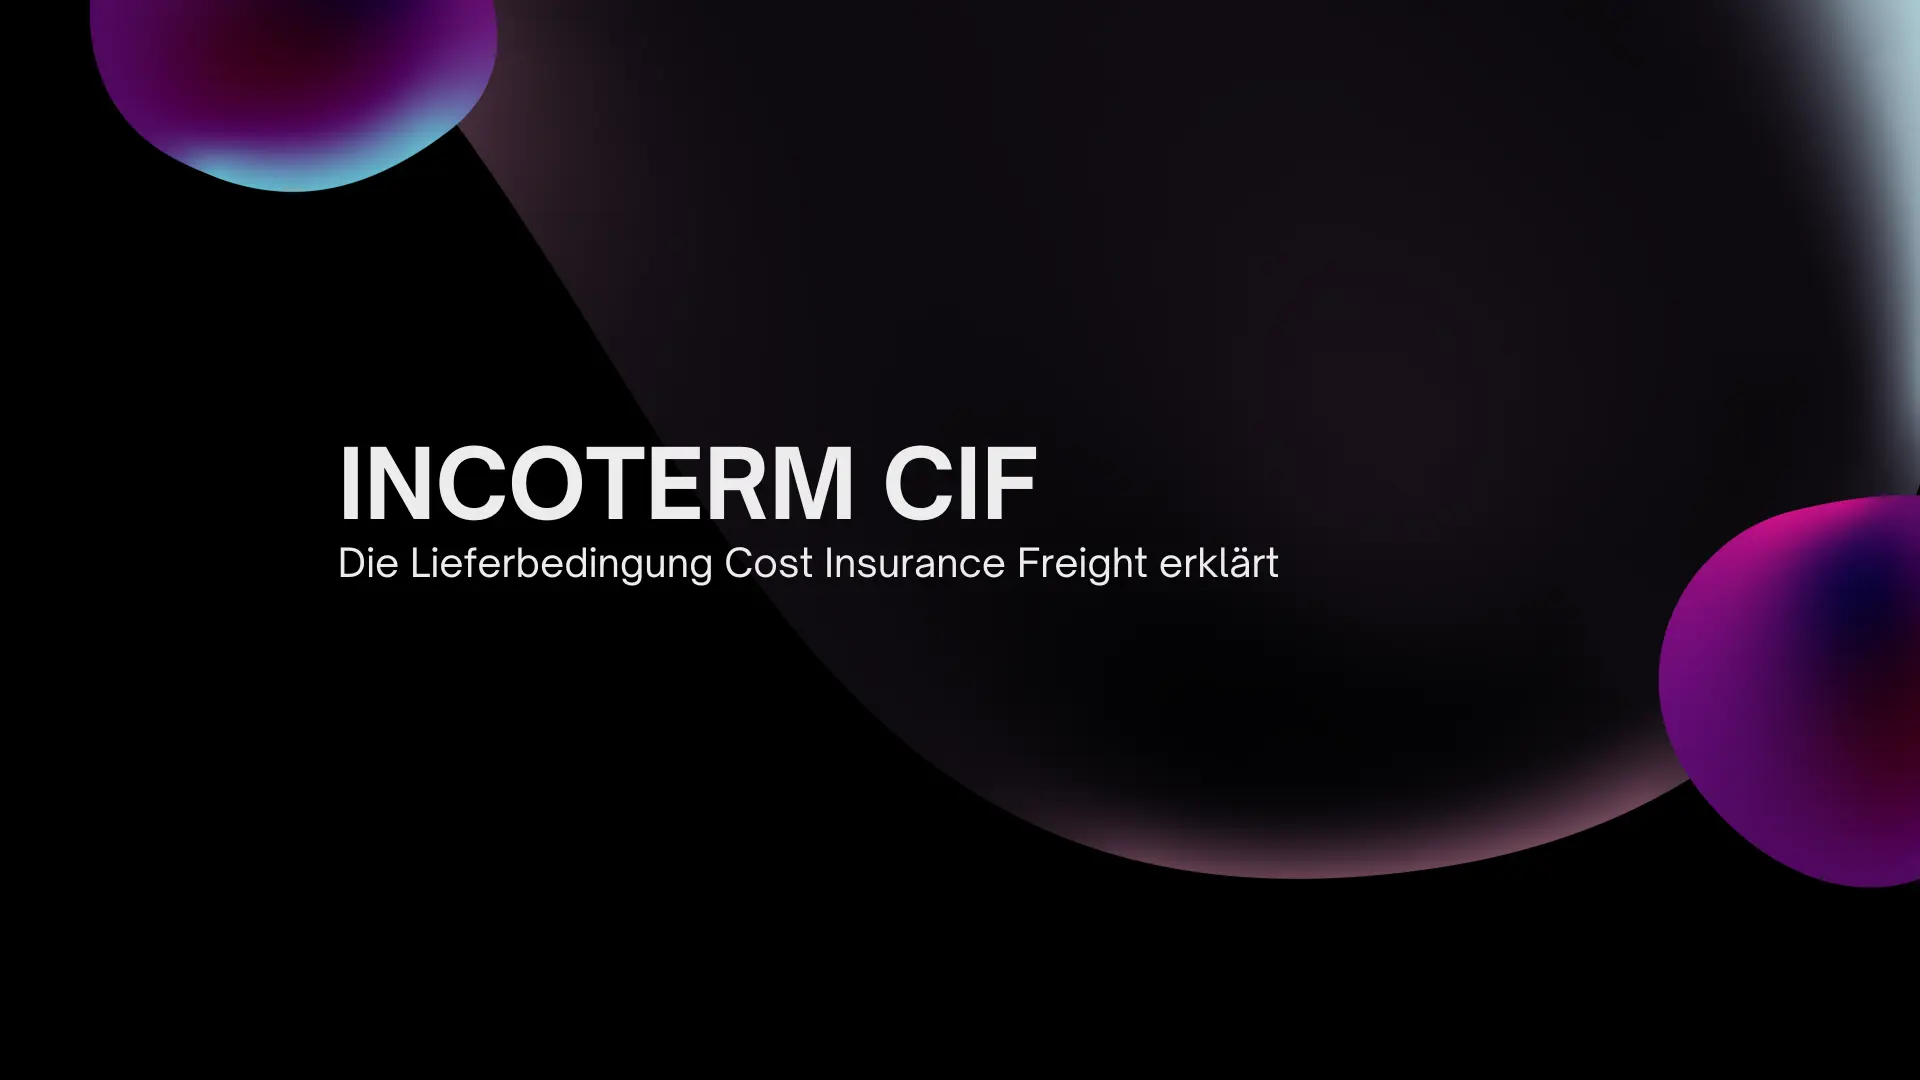 Incoterm CIF – Eine umfassende Analyse der Lieferbedingung Cost, Insurance, Freight